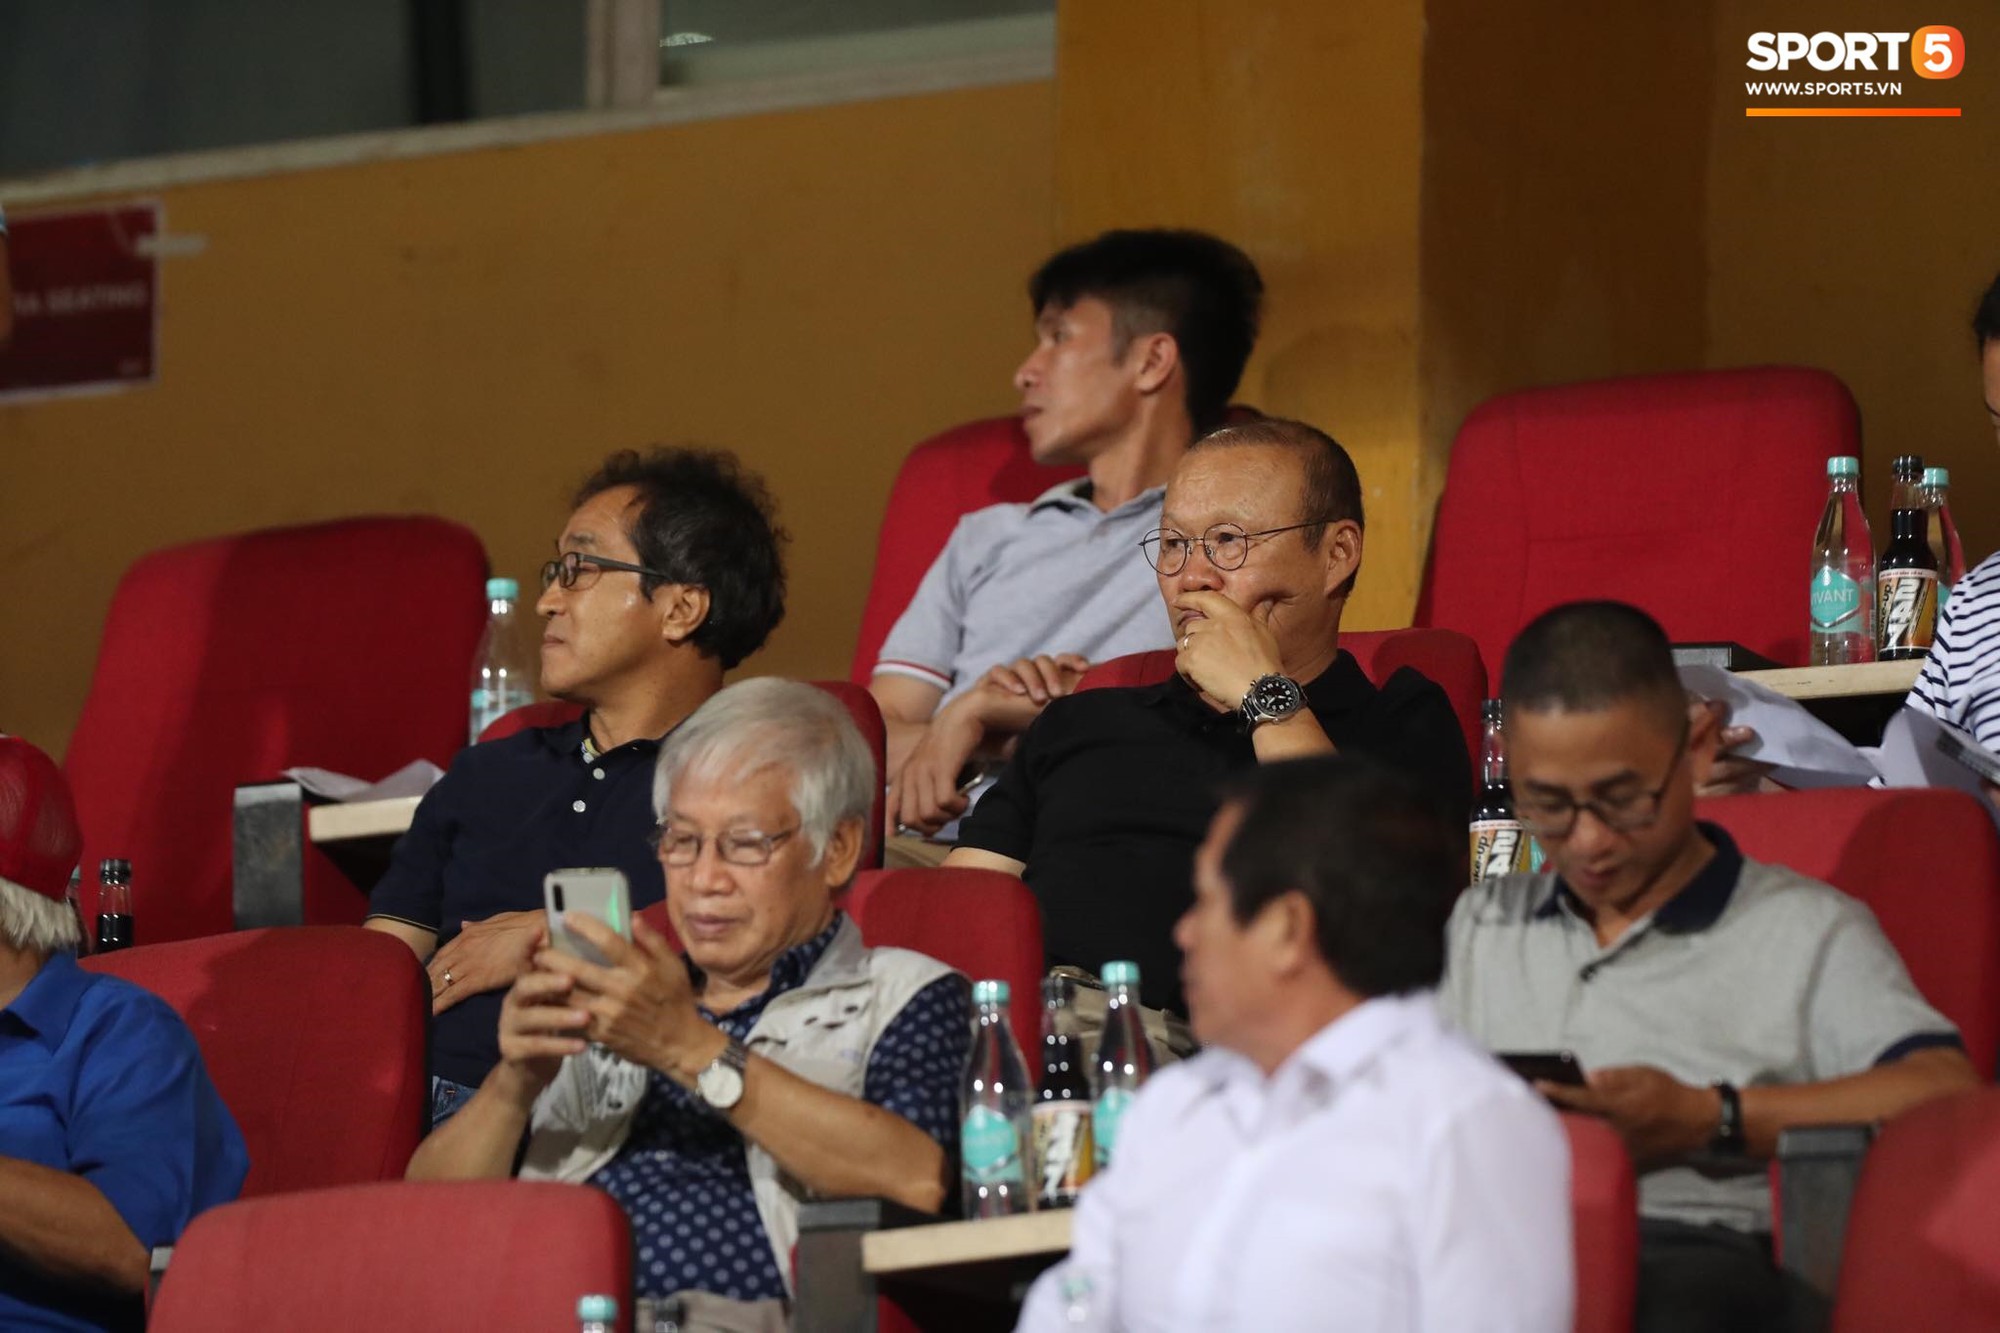 Thầy Park đầy suy tư khi chứng kiến Hải Quế, Tiến Dũng để thủng lưới tới 3 bàn trong trận đấu với Quảng Ninh - Ảnh 4.